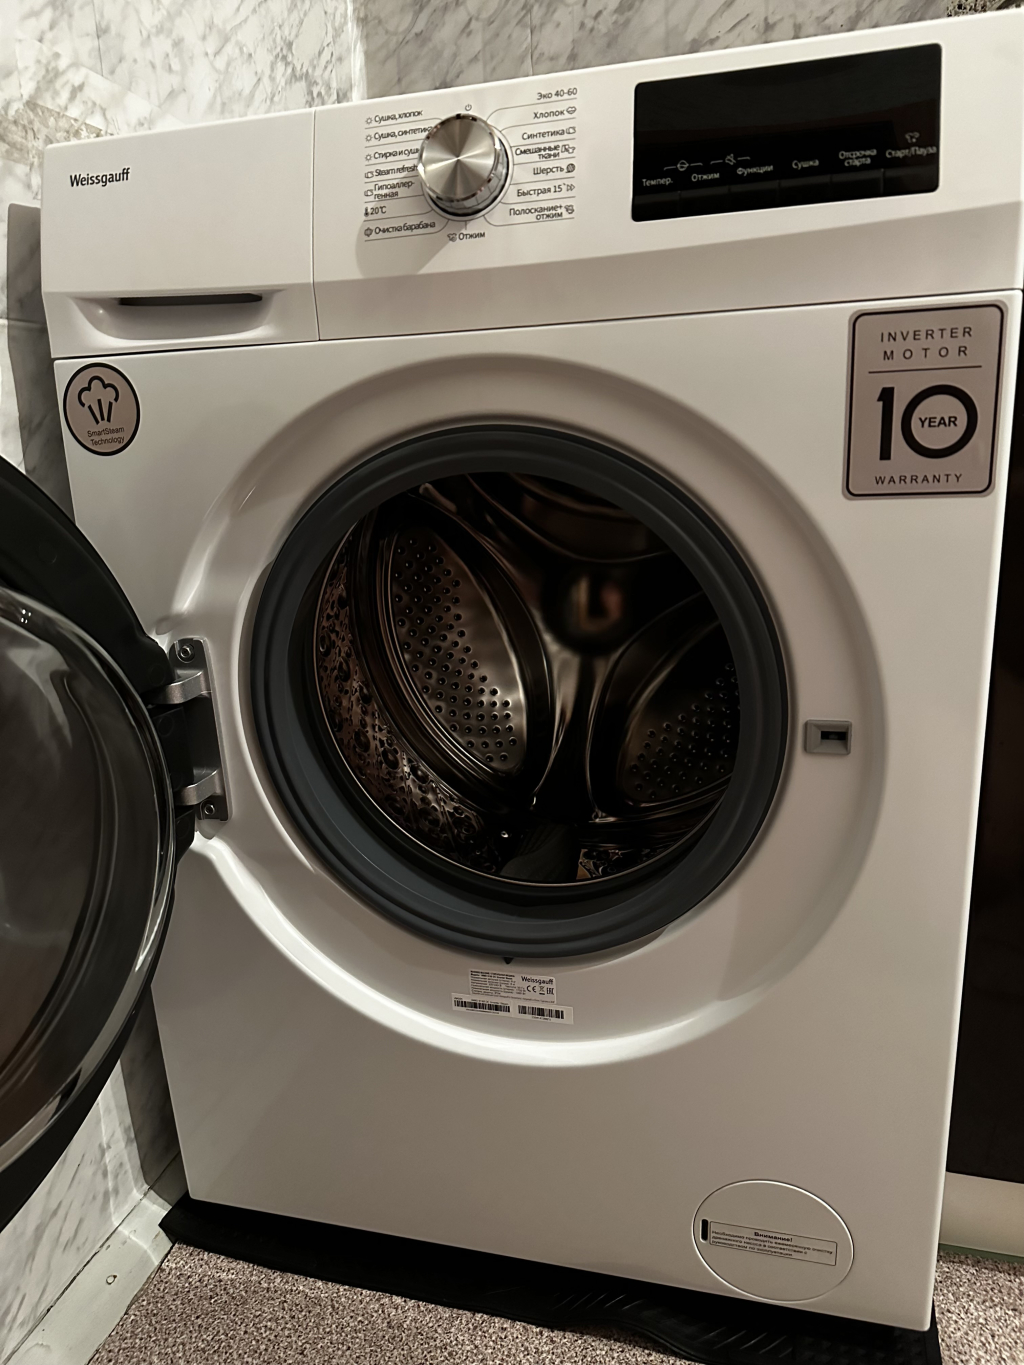 ООО Кликер - сервис по установке и сборке товаров - Установили стиральную машину с сушкой